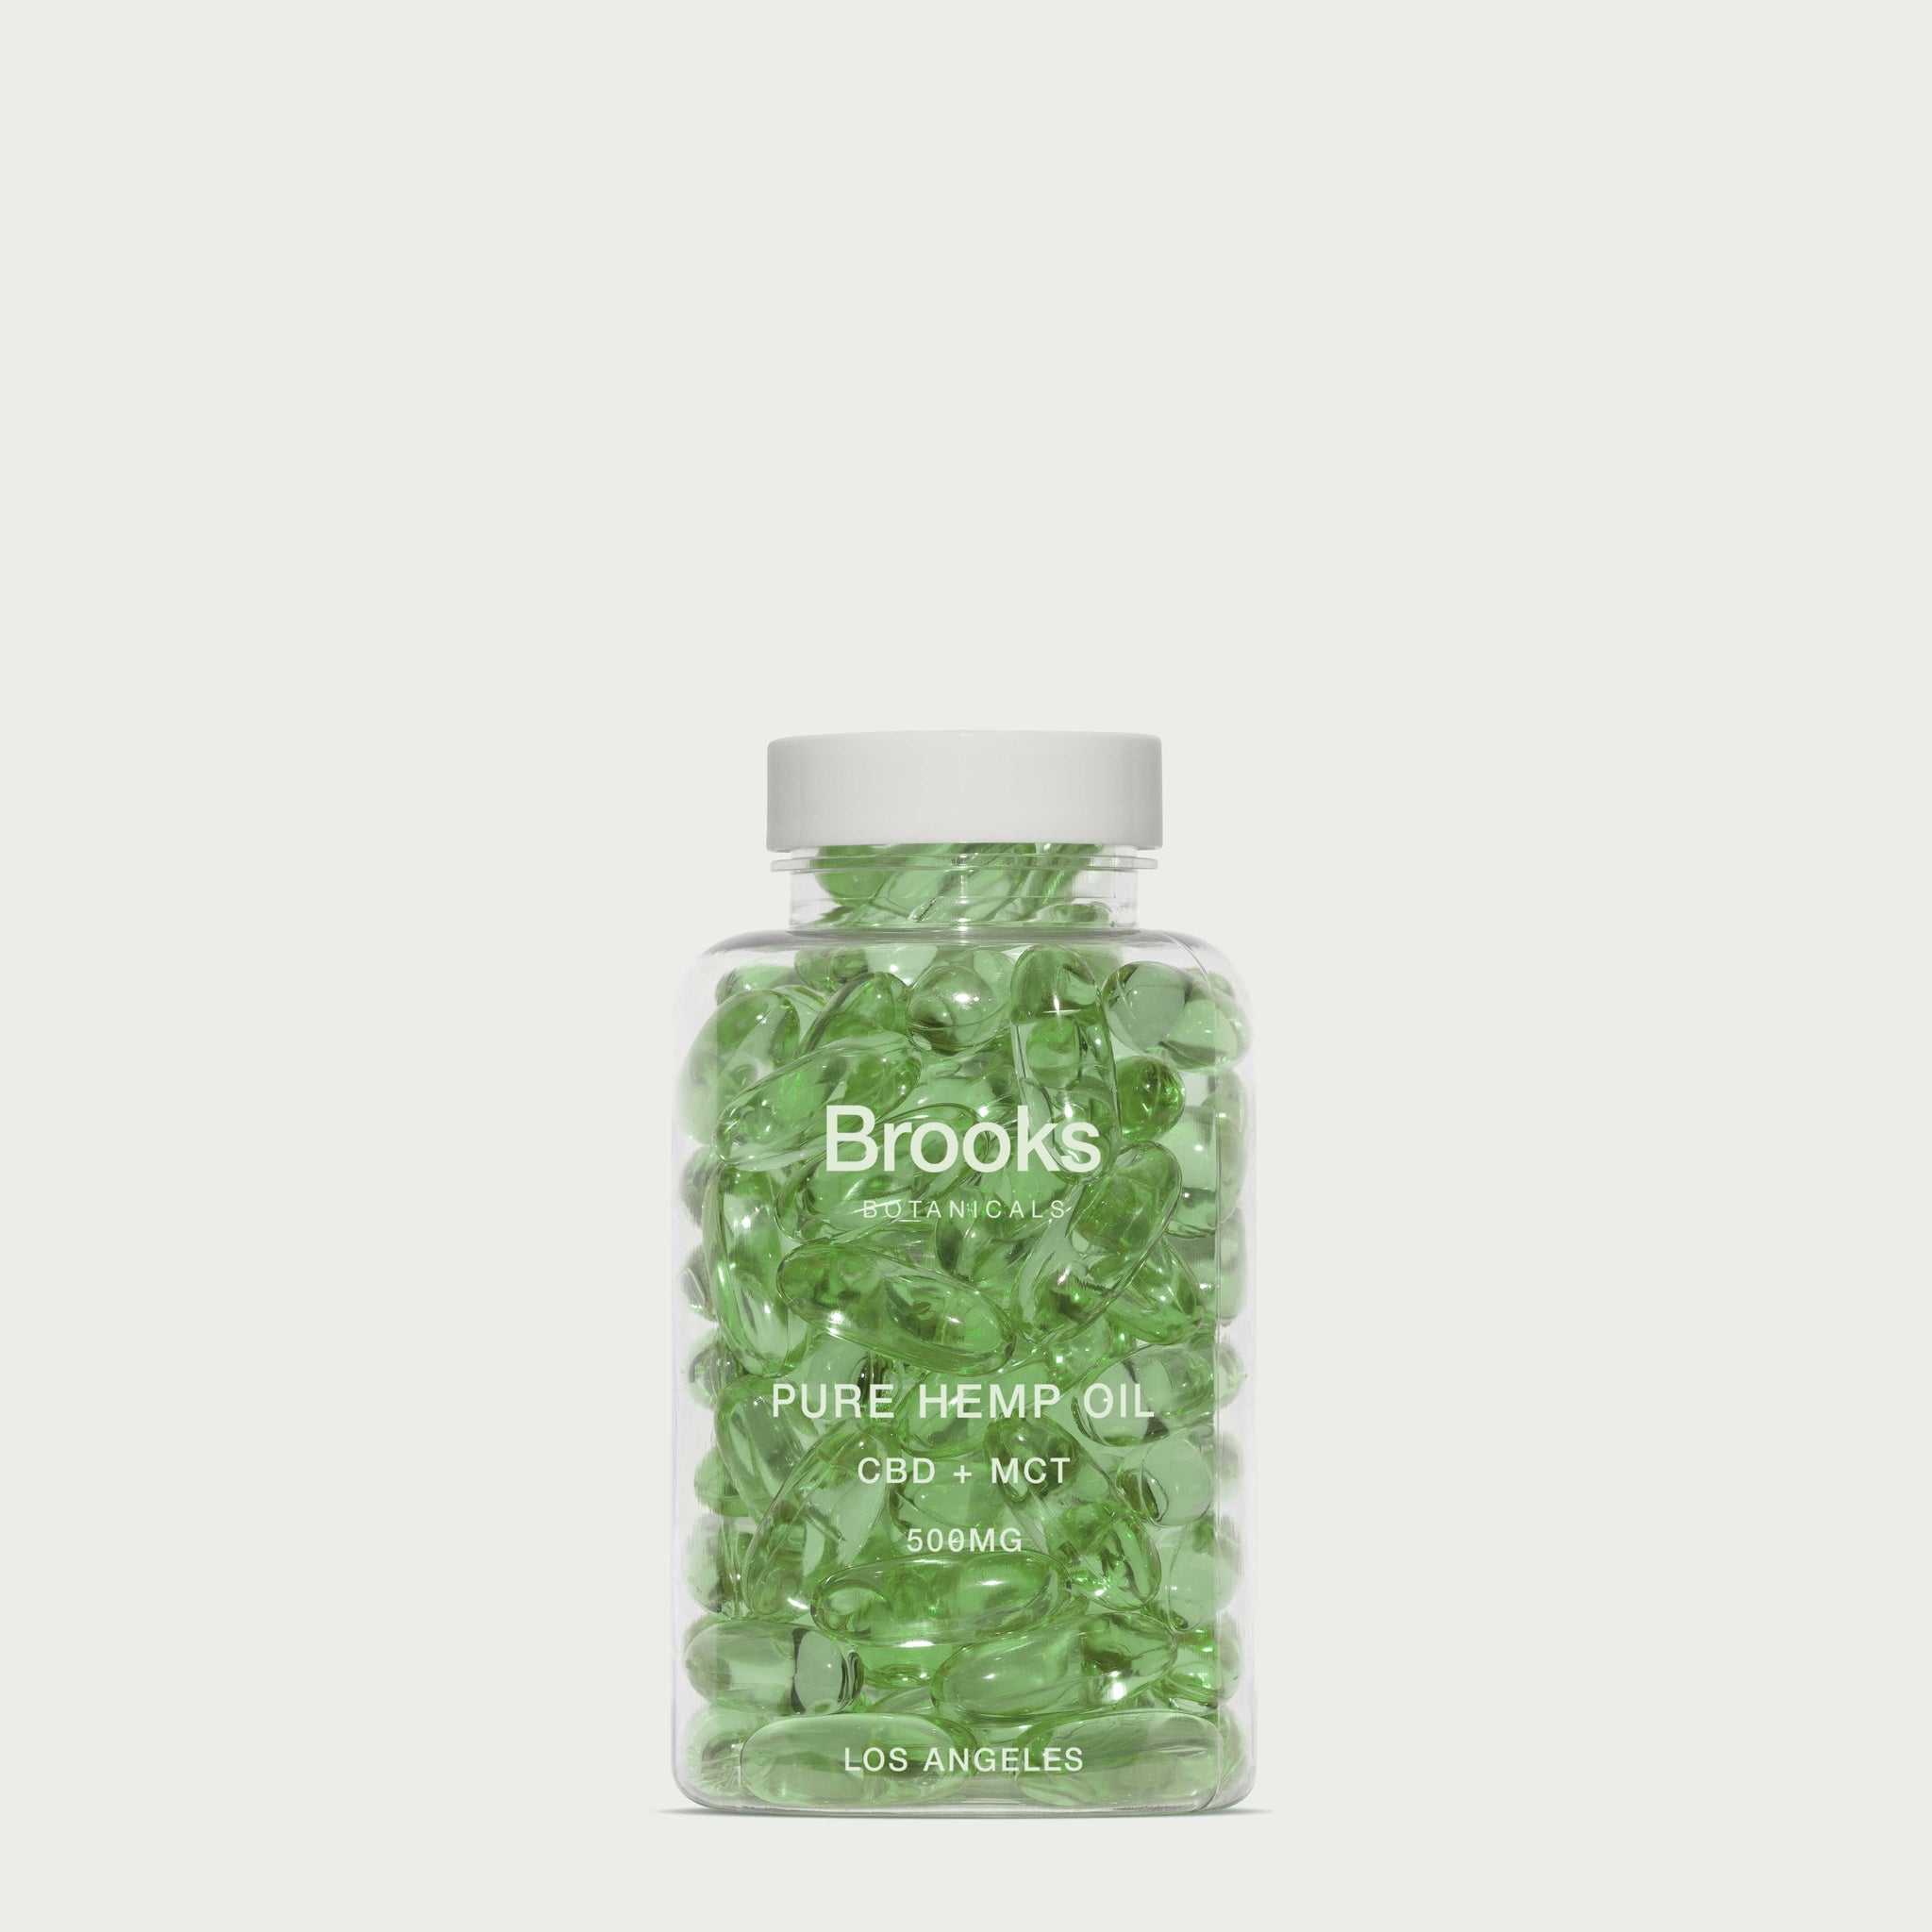 Vitamin Bottle Mockup No. 12 - Copal Studio Packaging Mockups For Designers